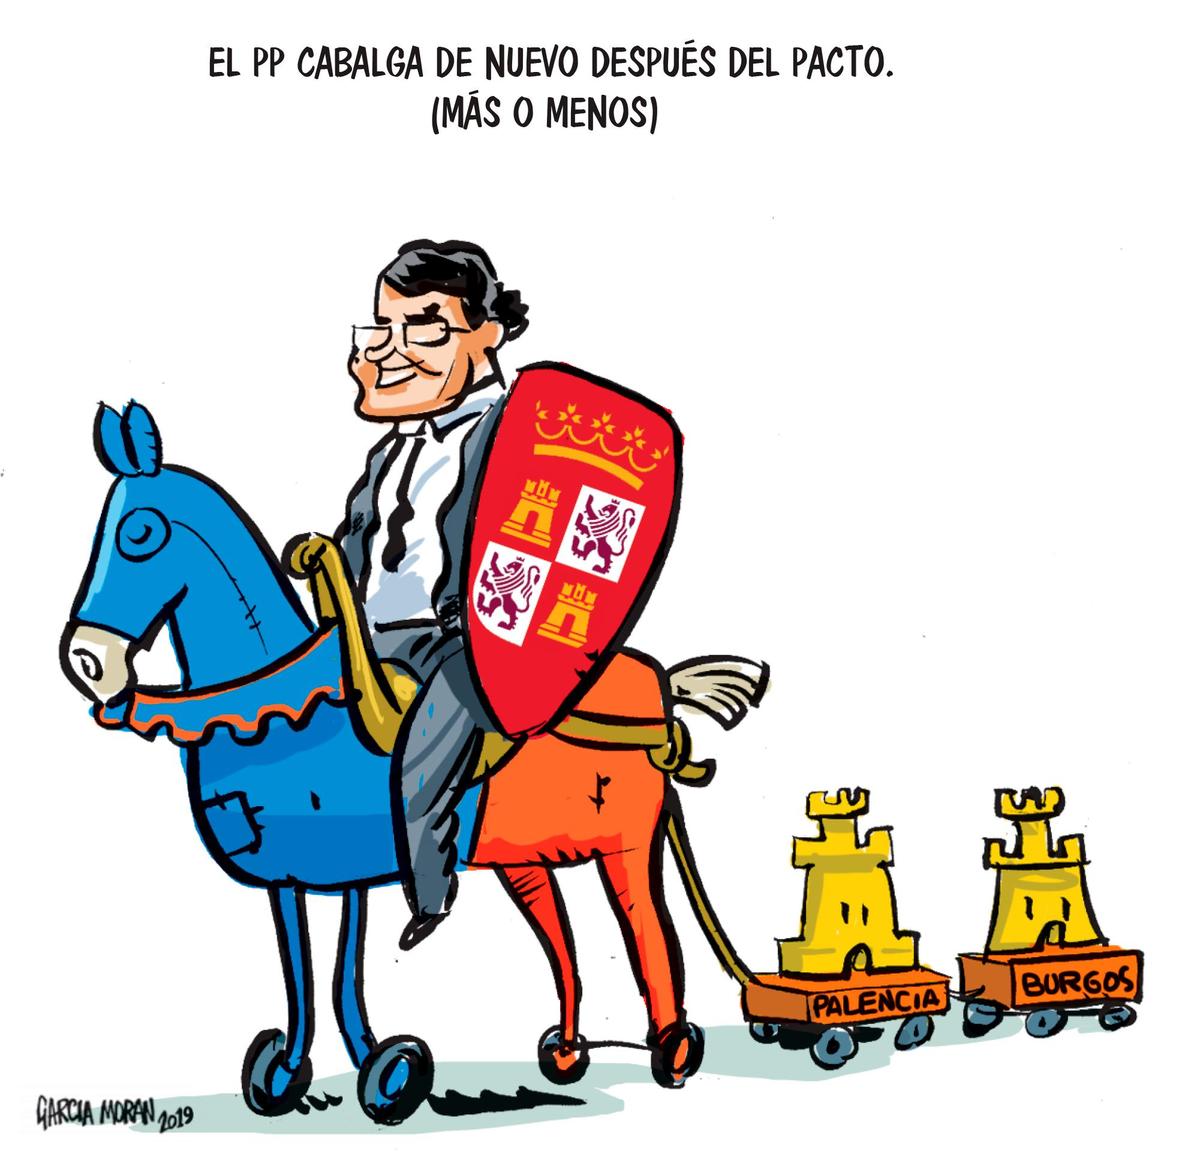 El humor de García Morán 14 de junio de 2019